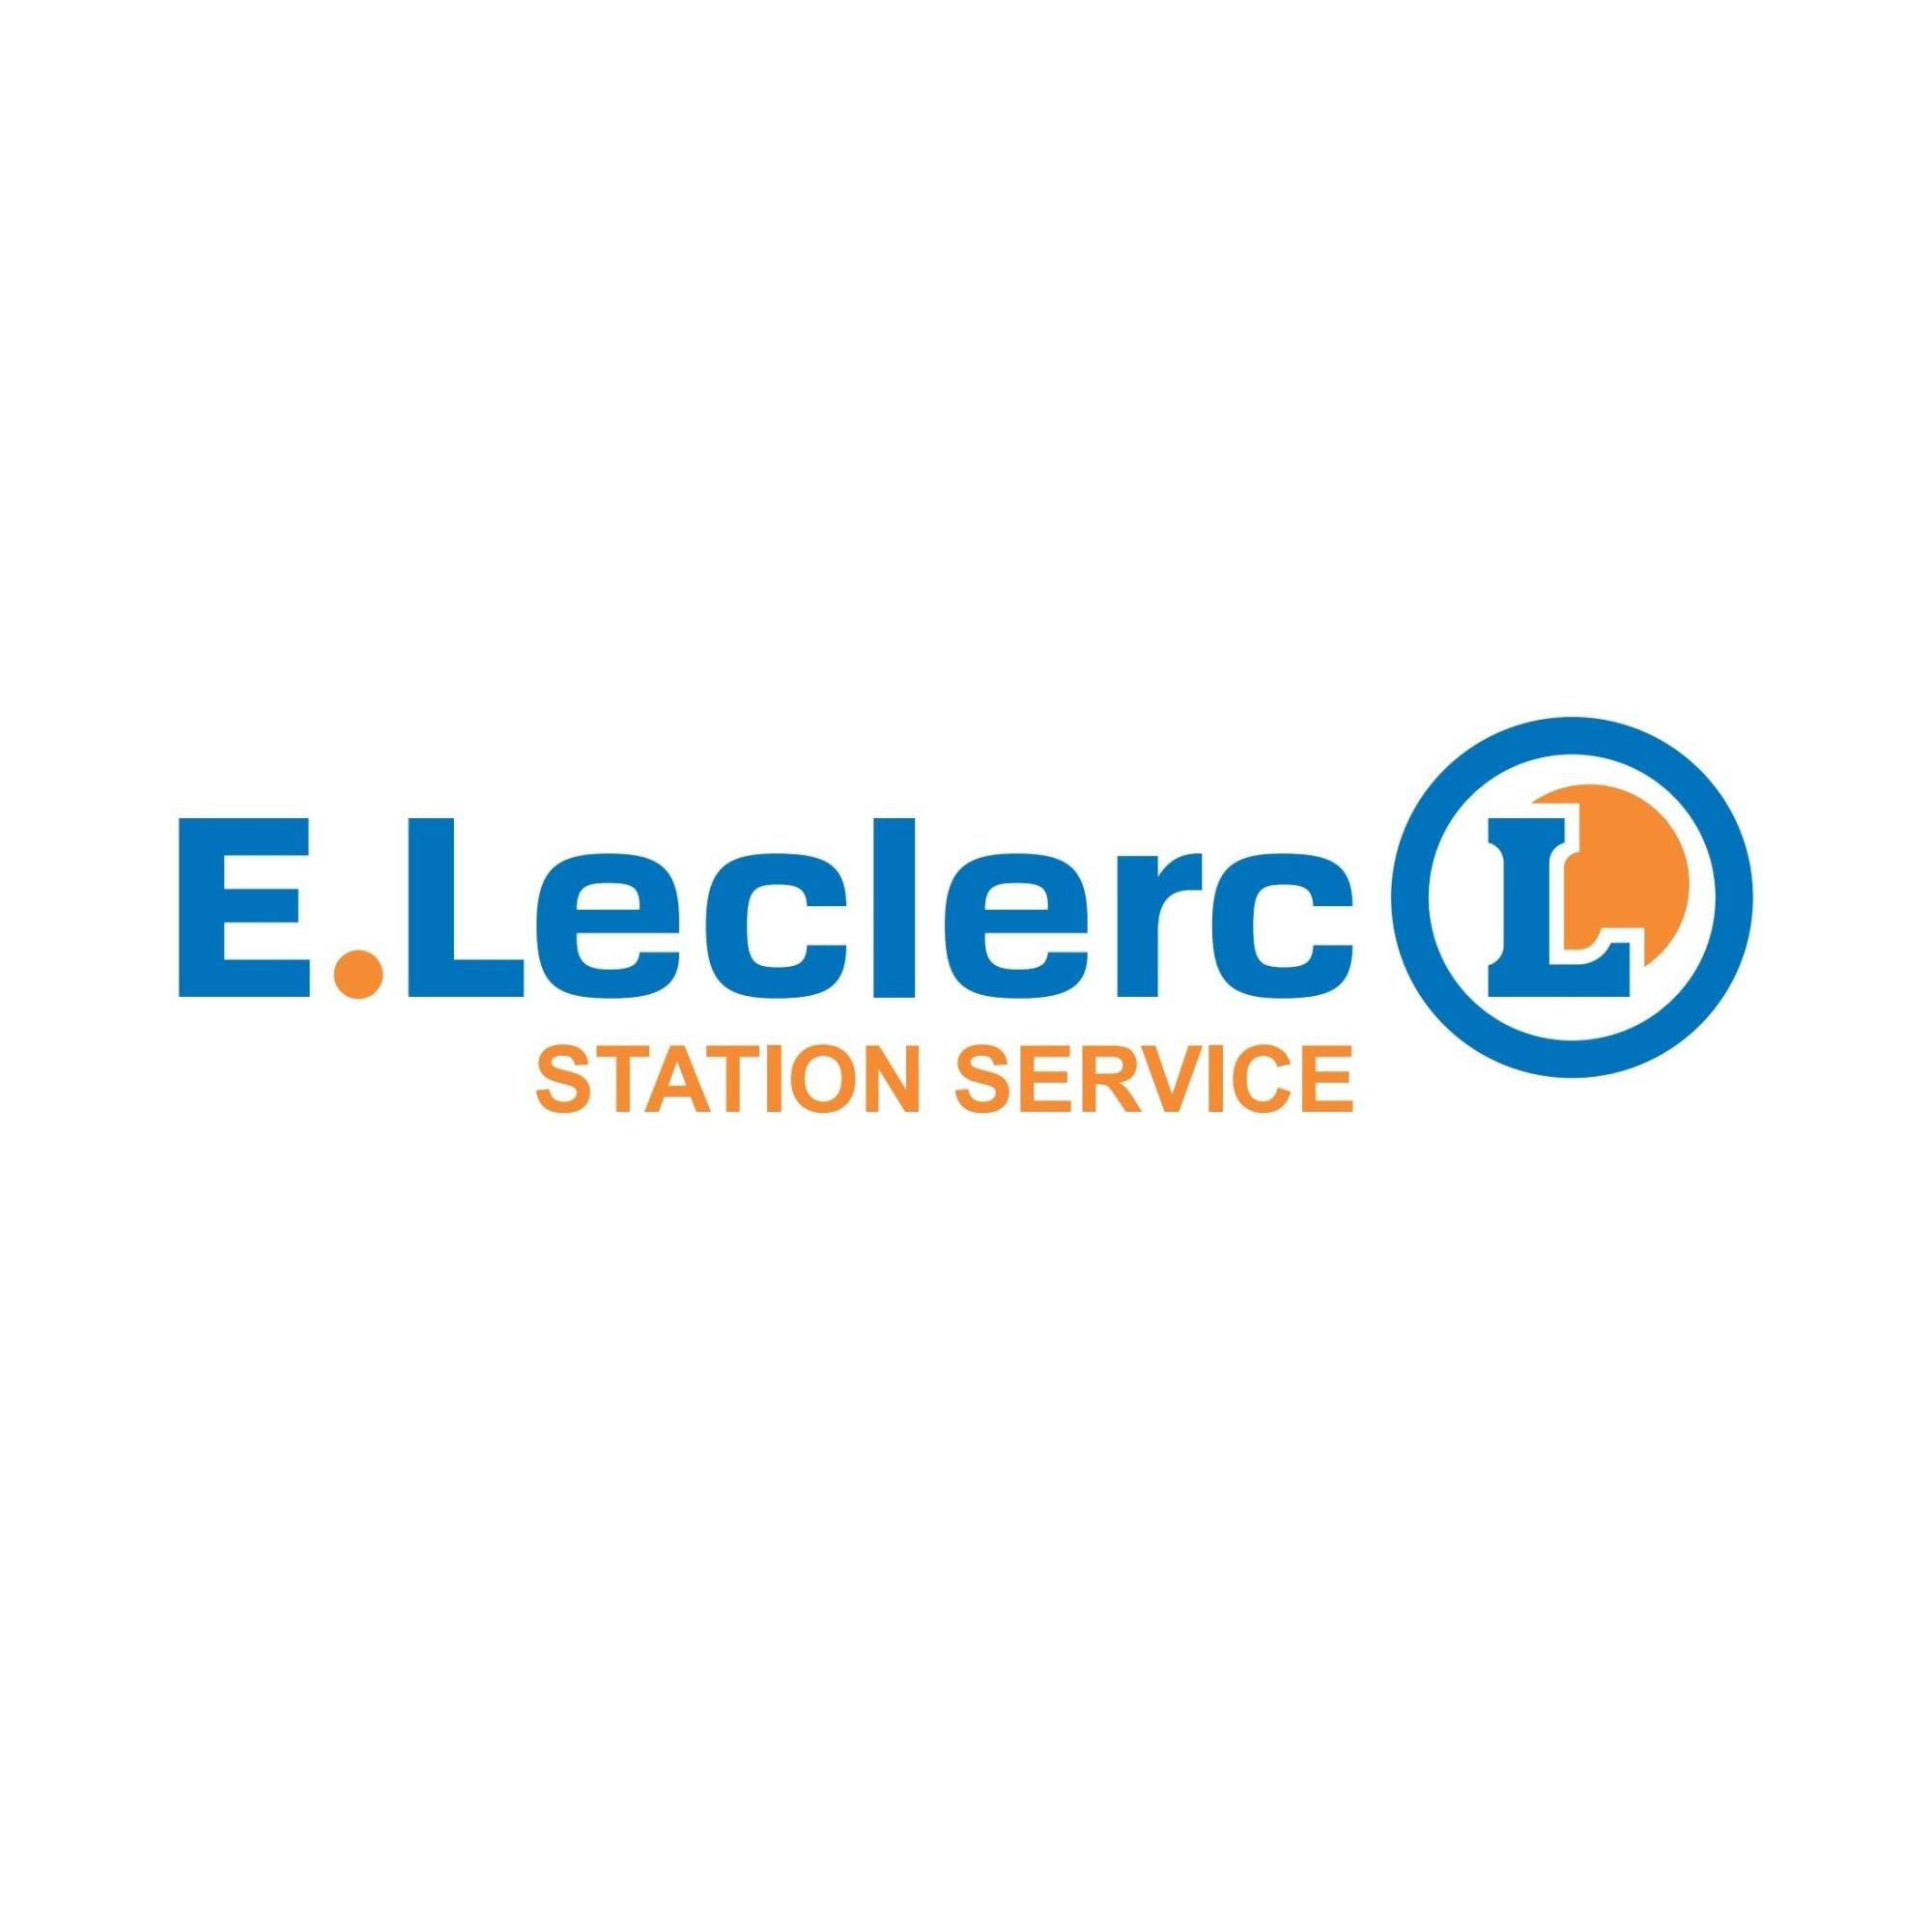 E.leclerc Station Service Clichy Sous Bois